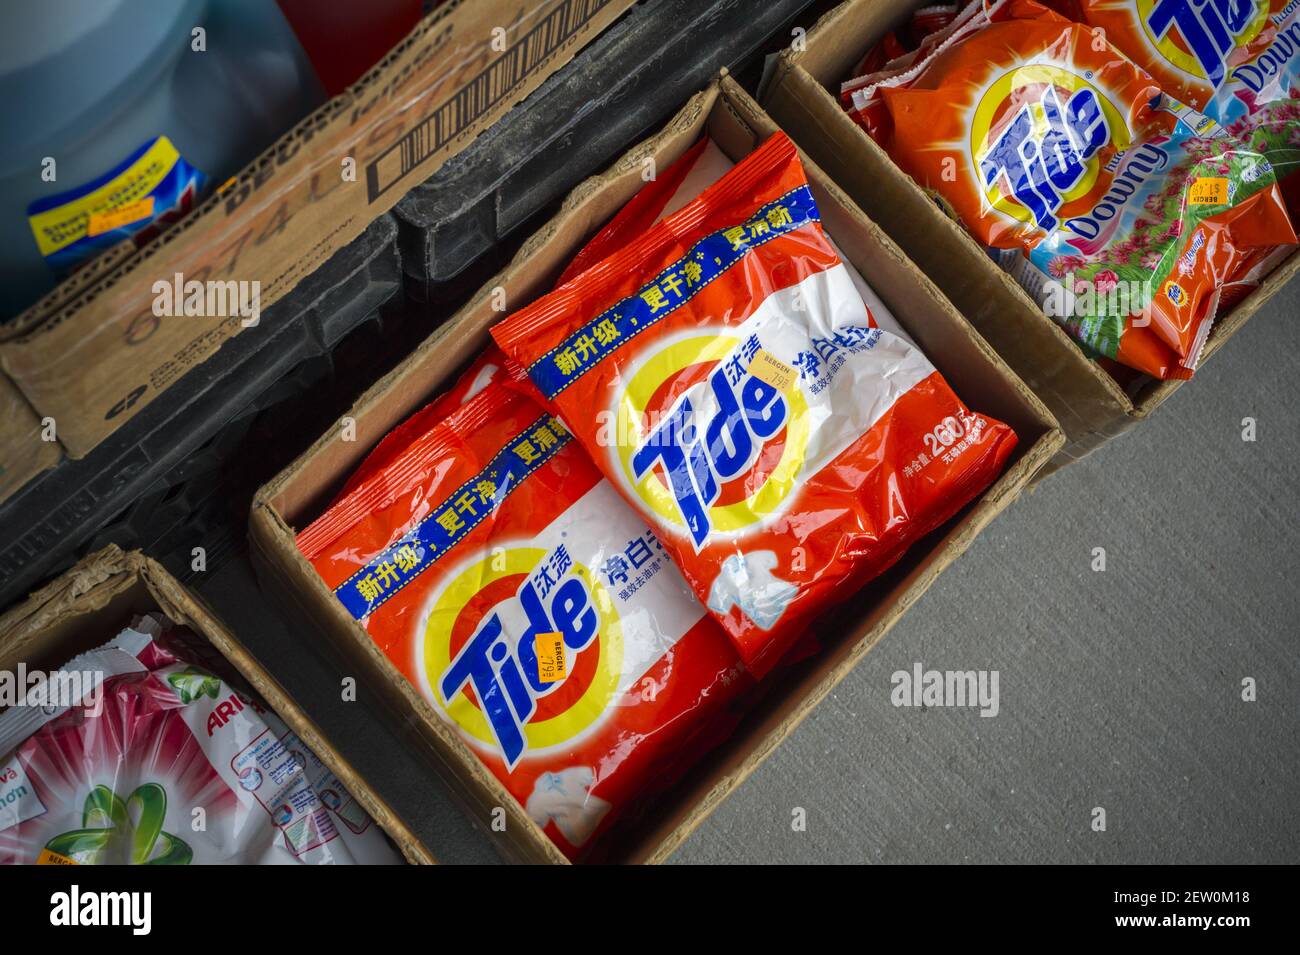 Paquetes de detergente de Tide Procter & Gamble en inglés y chino en el  barrio Melrose del Bronx en Nueva York Domingo, 5 de febrero de 2017.  Procter & Gamble informó de